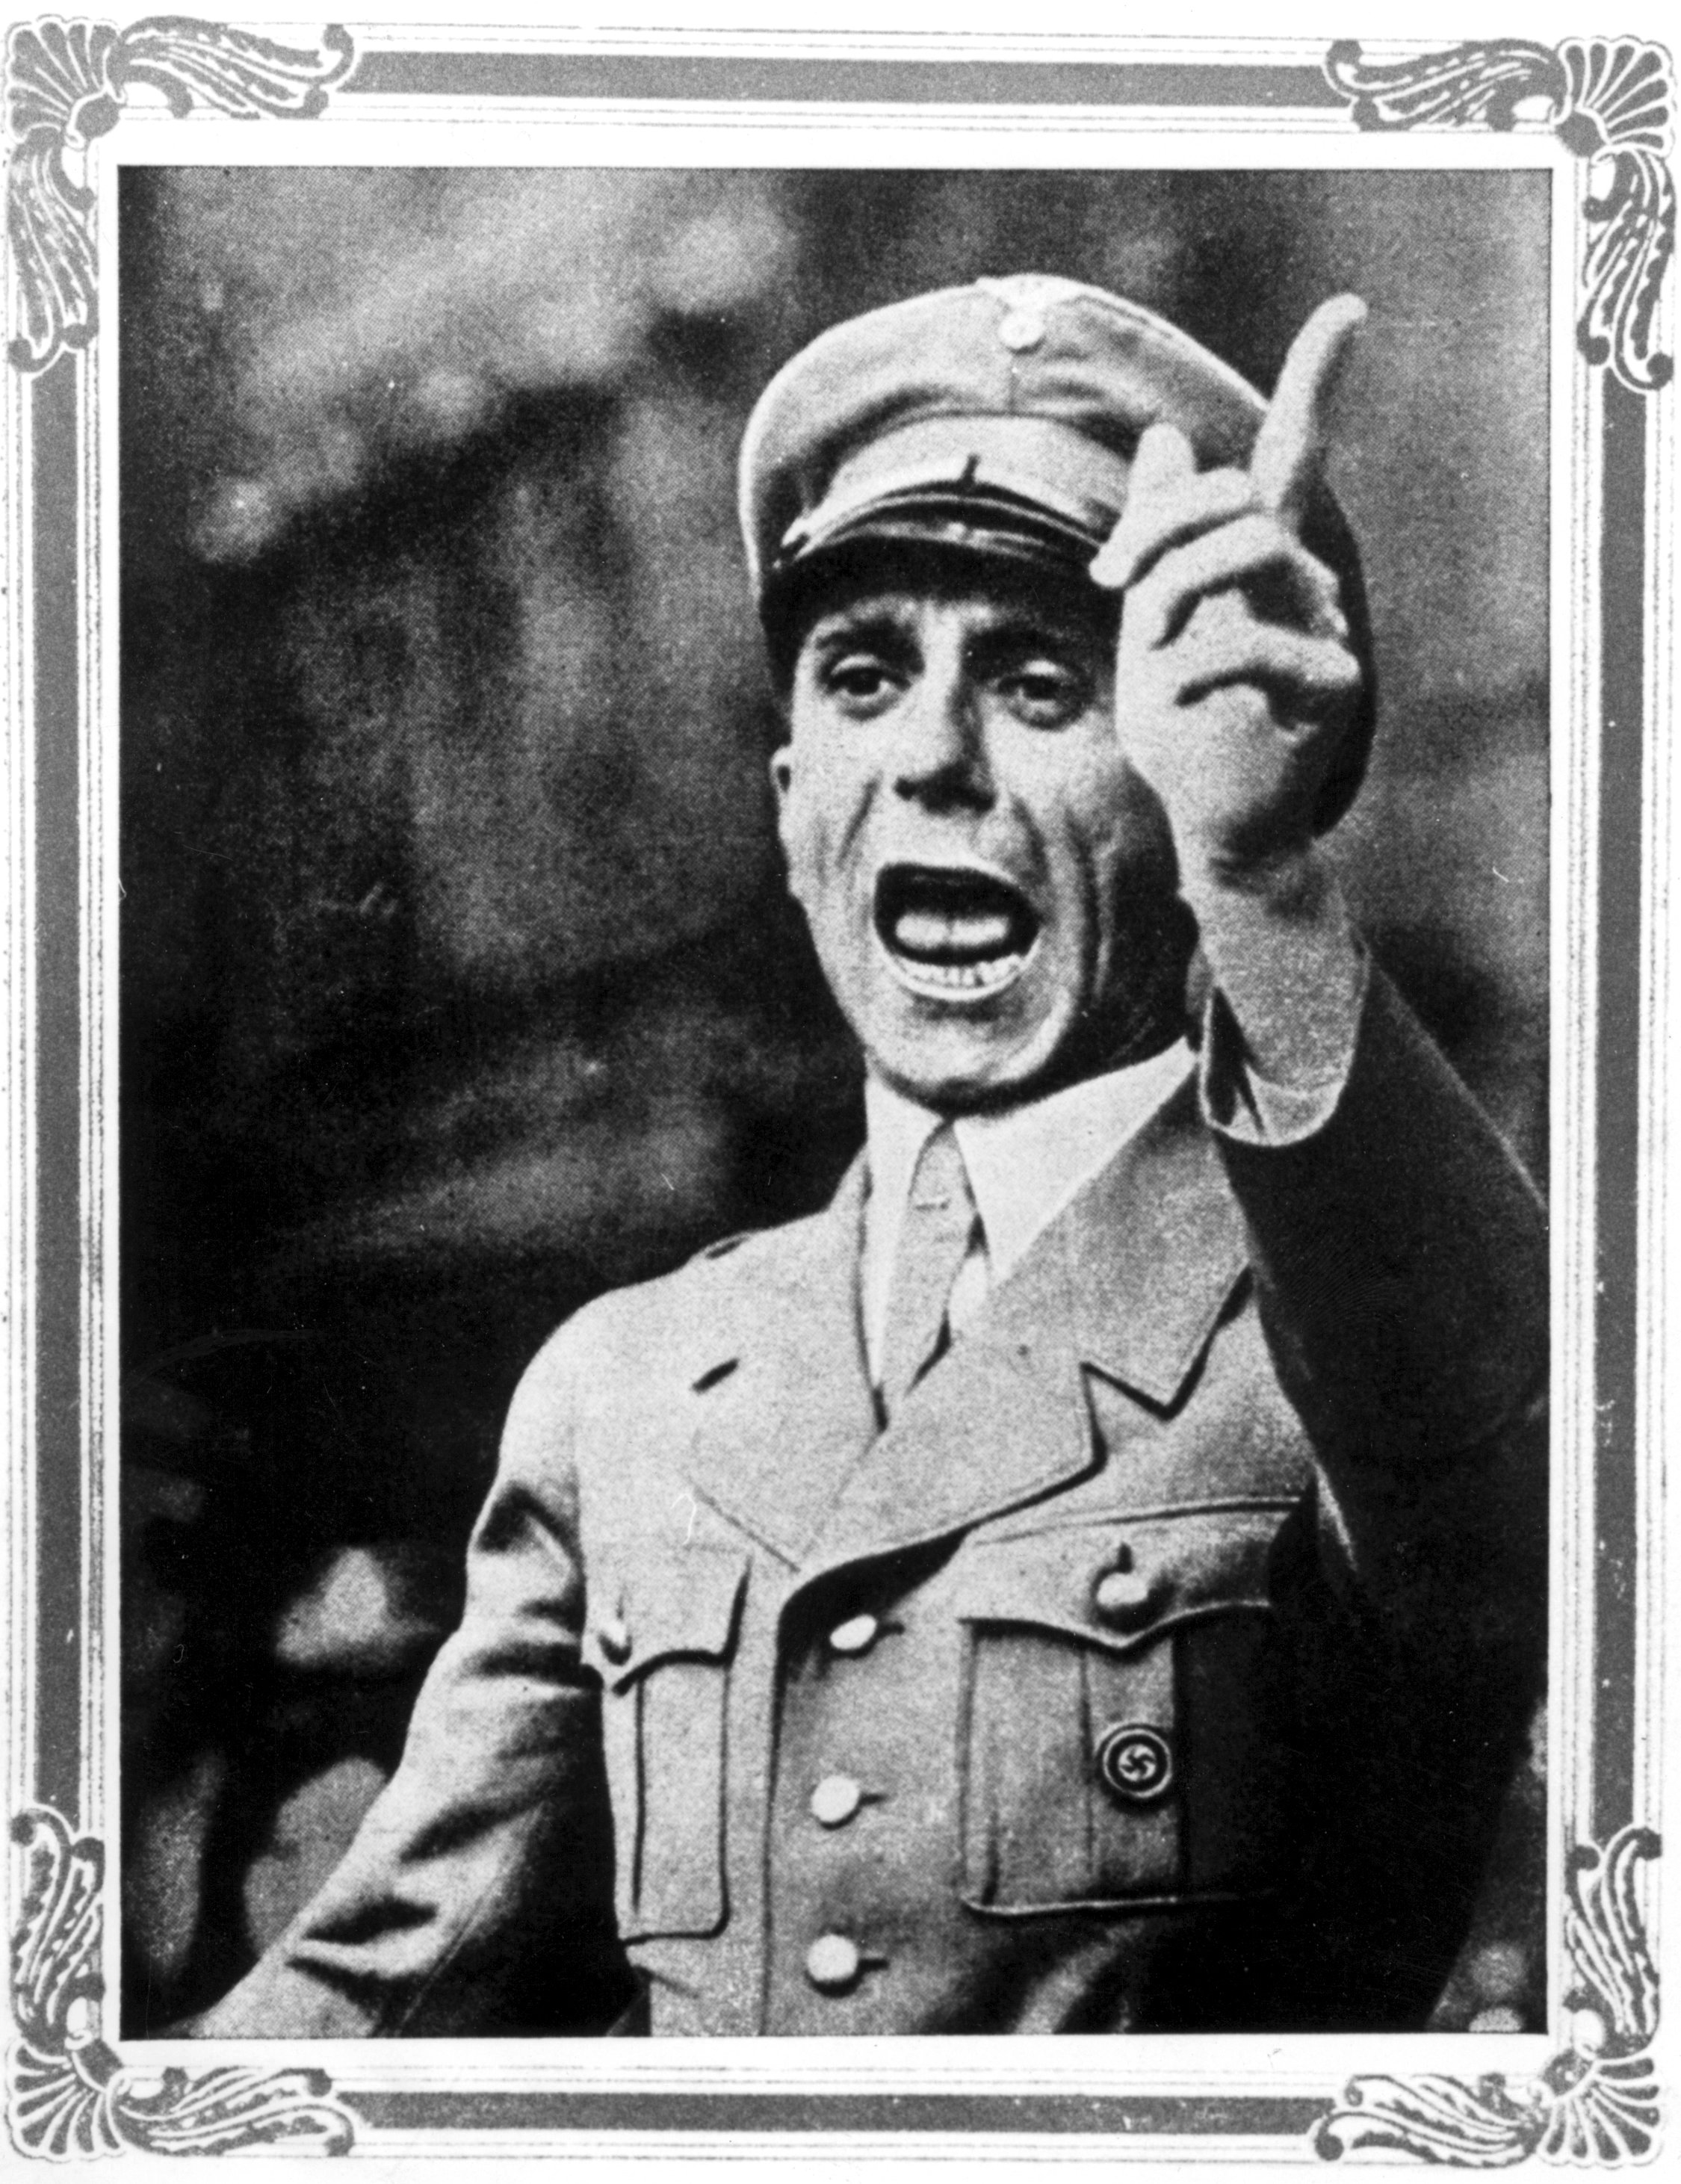 Propagandaministern och nazisten Joseph Goebbels arbetade tillsammans med Hilter.